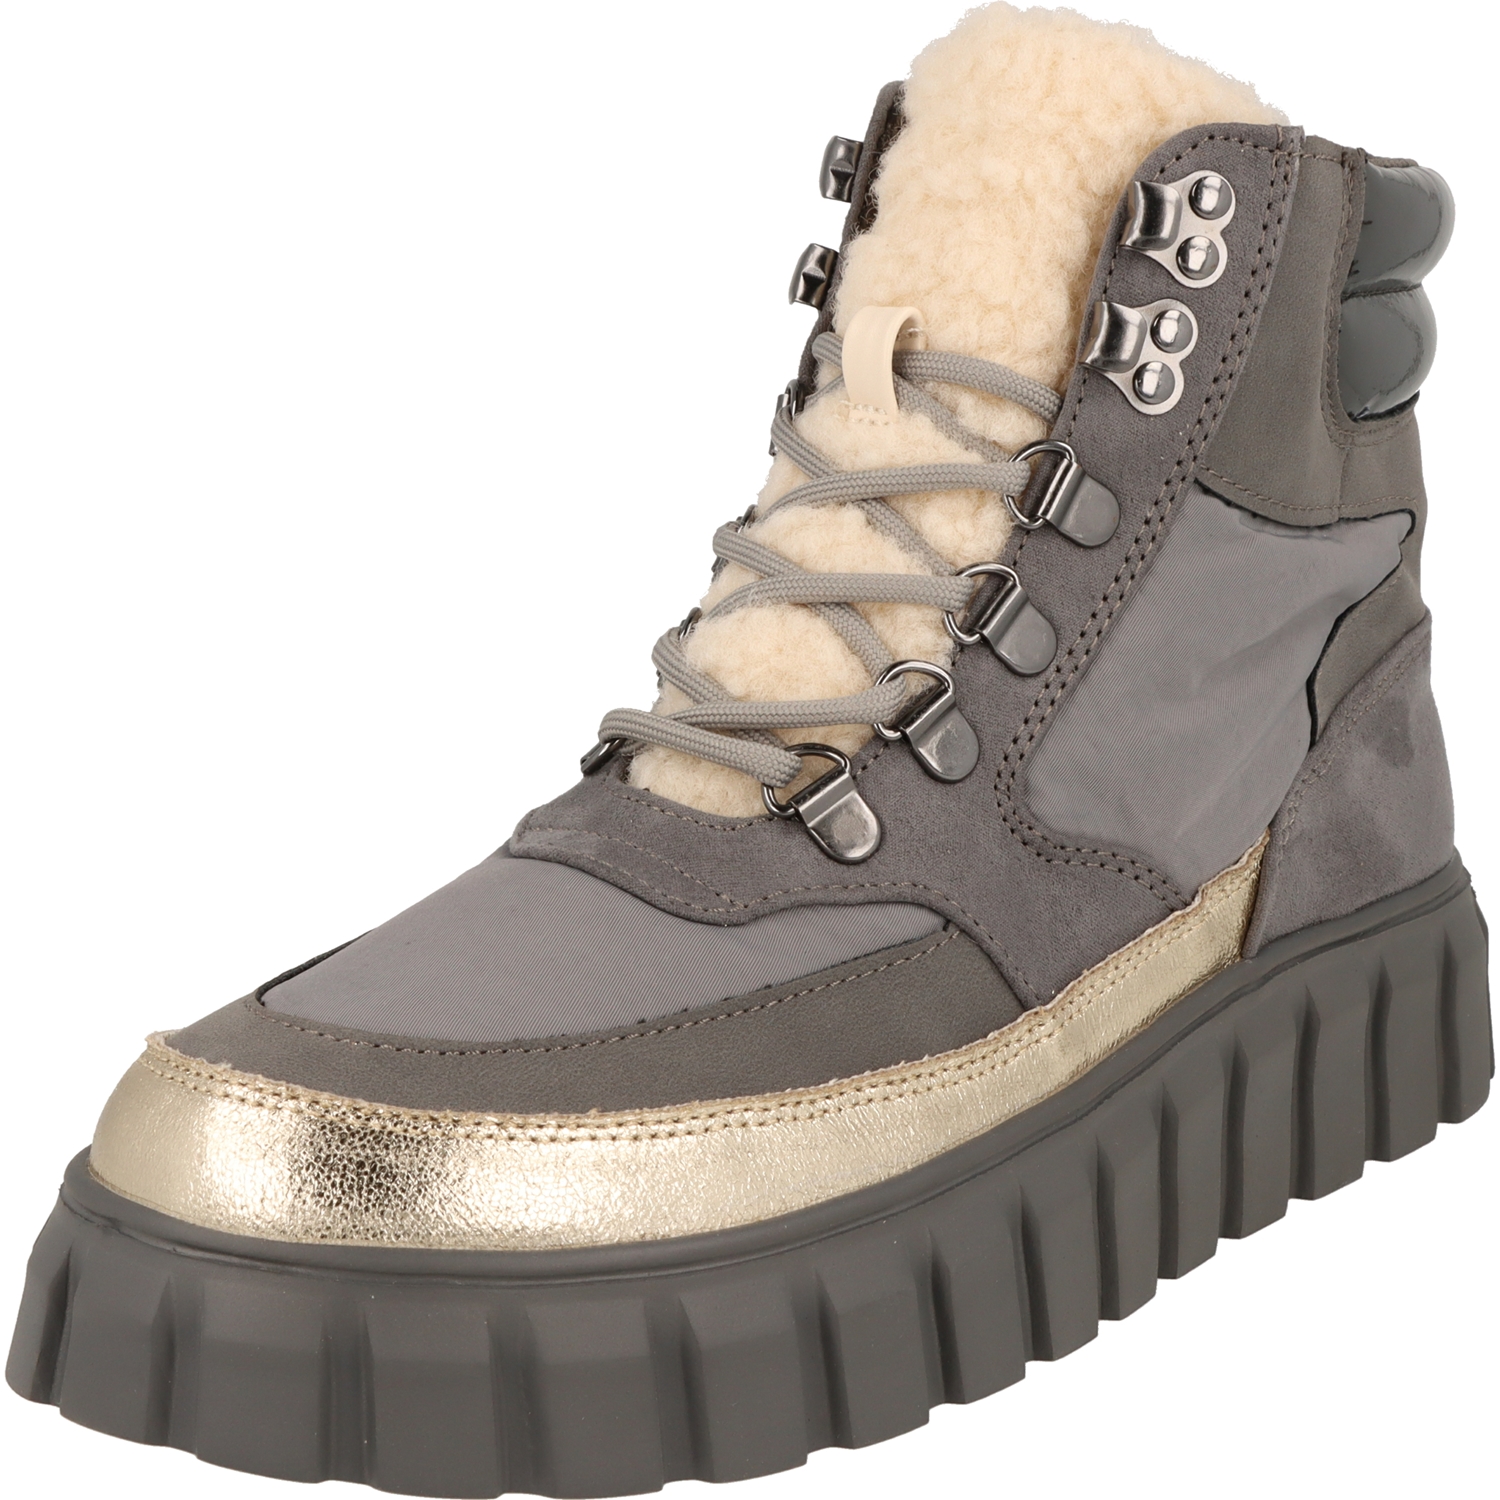 La Strada Damen Schuhe 2103324-1401 modische Plateau Boots Stiefel Combi Tan